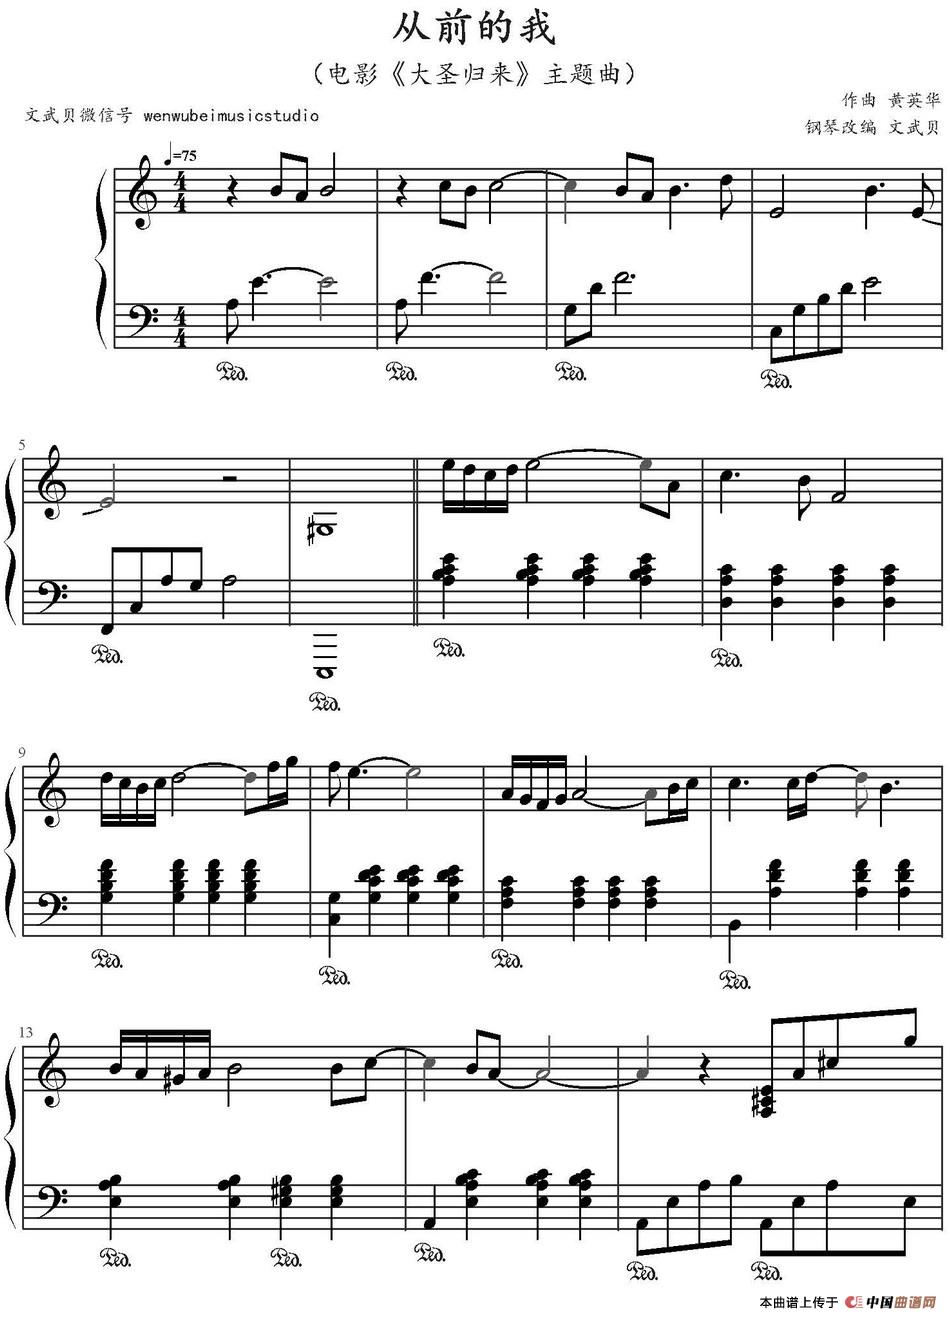 《从前的我》钢琴曲谱图分享